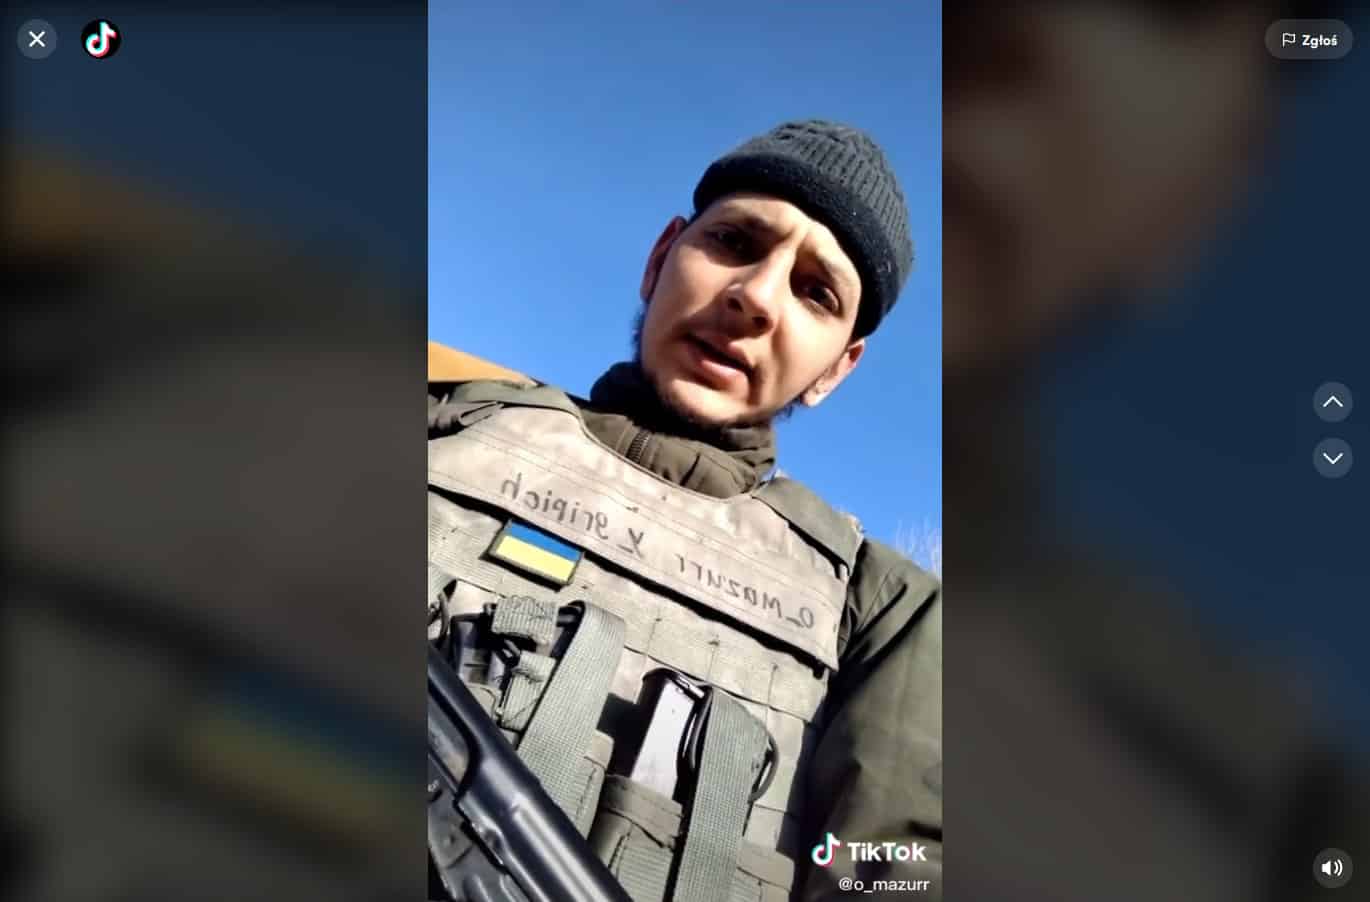 Ukraiński żołnierz z apelem do Kaczyńskiego: "Panie Jareczku kochany" ukraina Olsztyn, Wiadomości